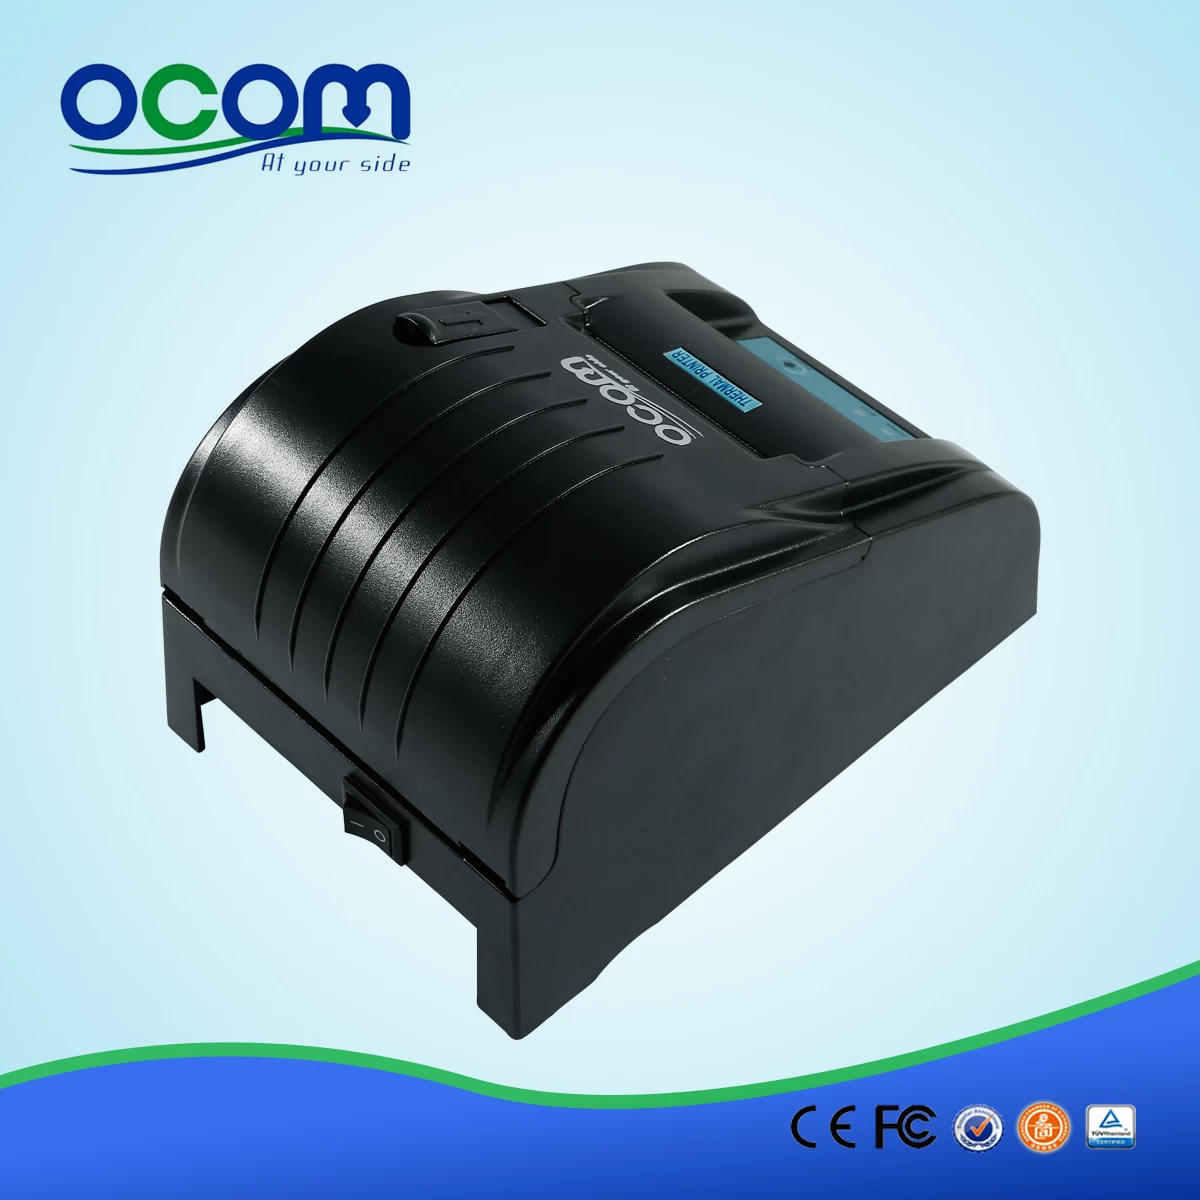 Pos thermal receipt printer pos58 OCPP-585